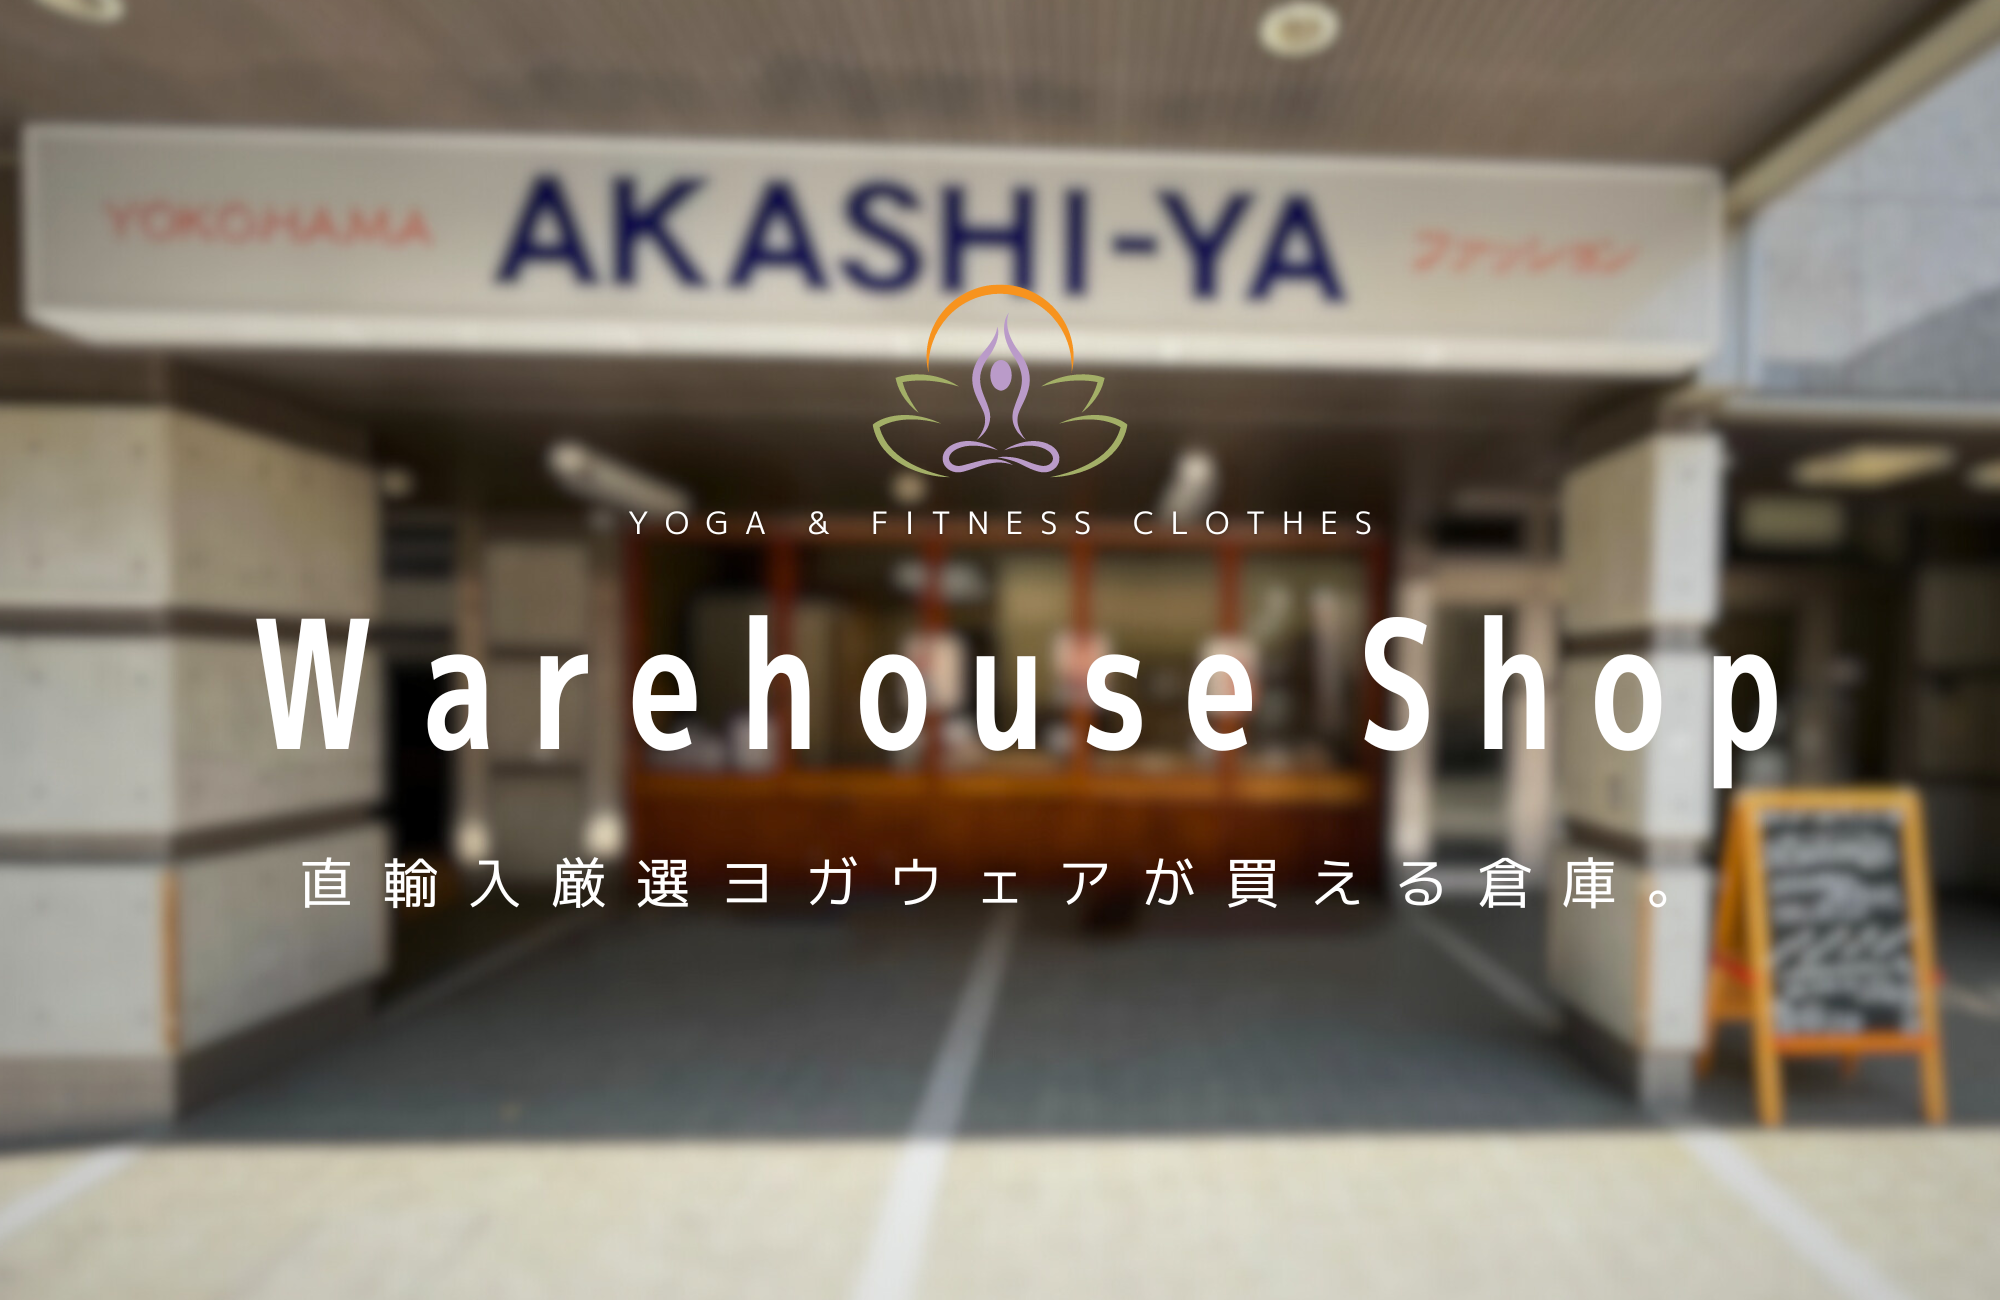 横浜のインポートヨガウェアショップといえば、ウェアハウスショップ中川。直輸入厳選ヨガウェアが買えちゃう倉庫。